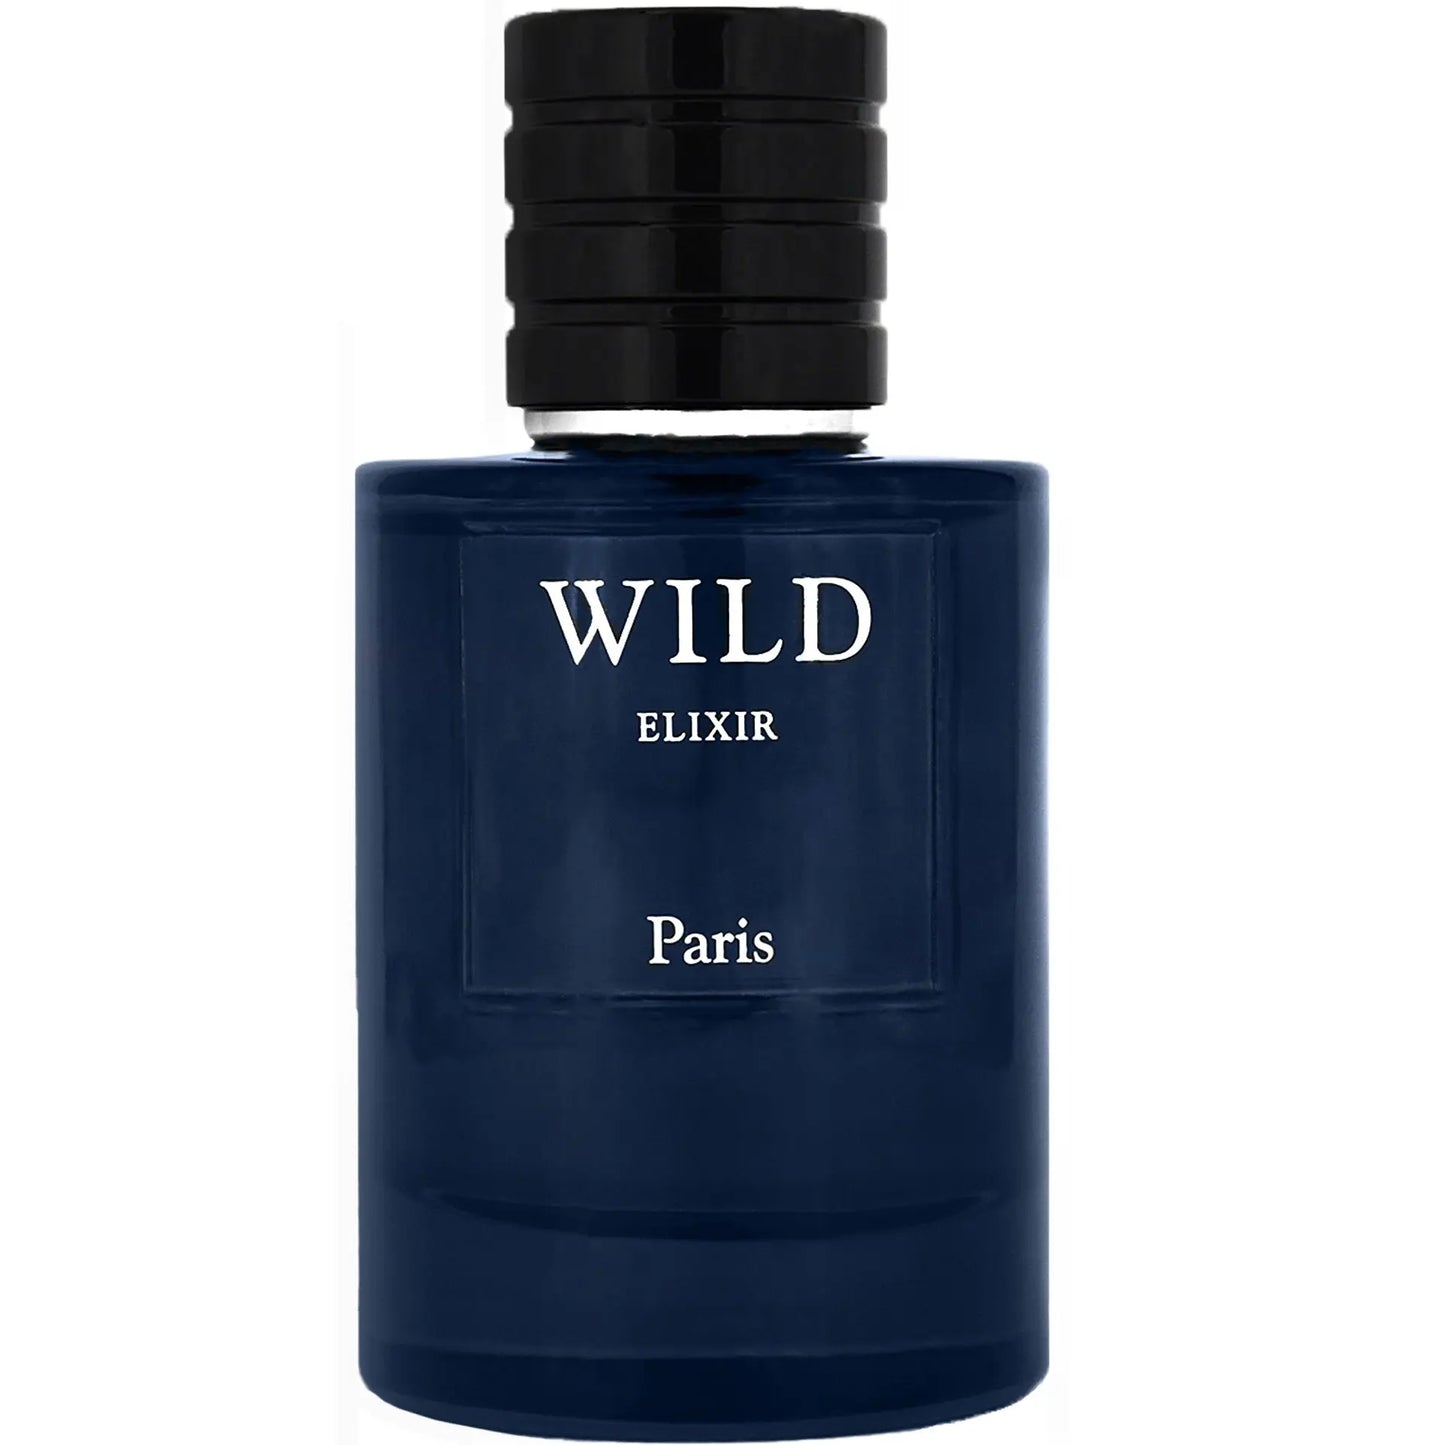 Wild Elixir  - 70ml Parfum - Dapper Industries SA